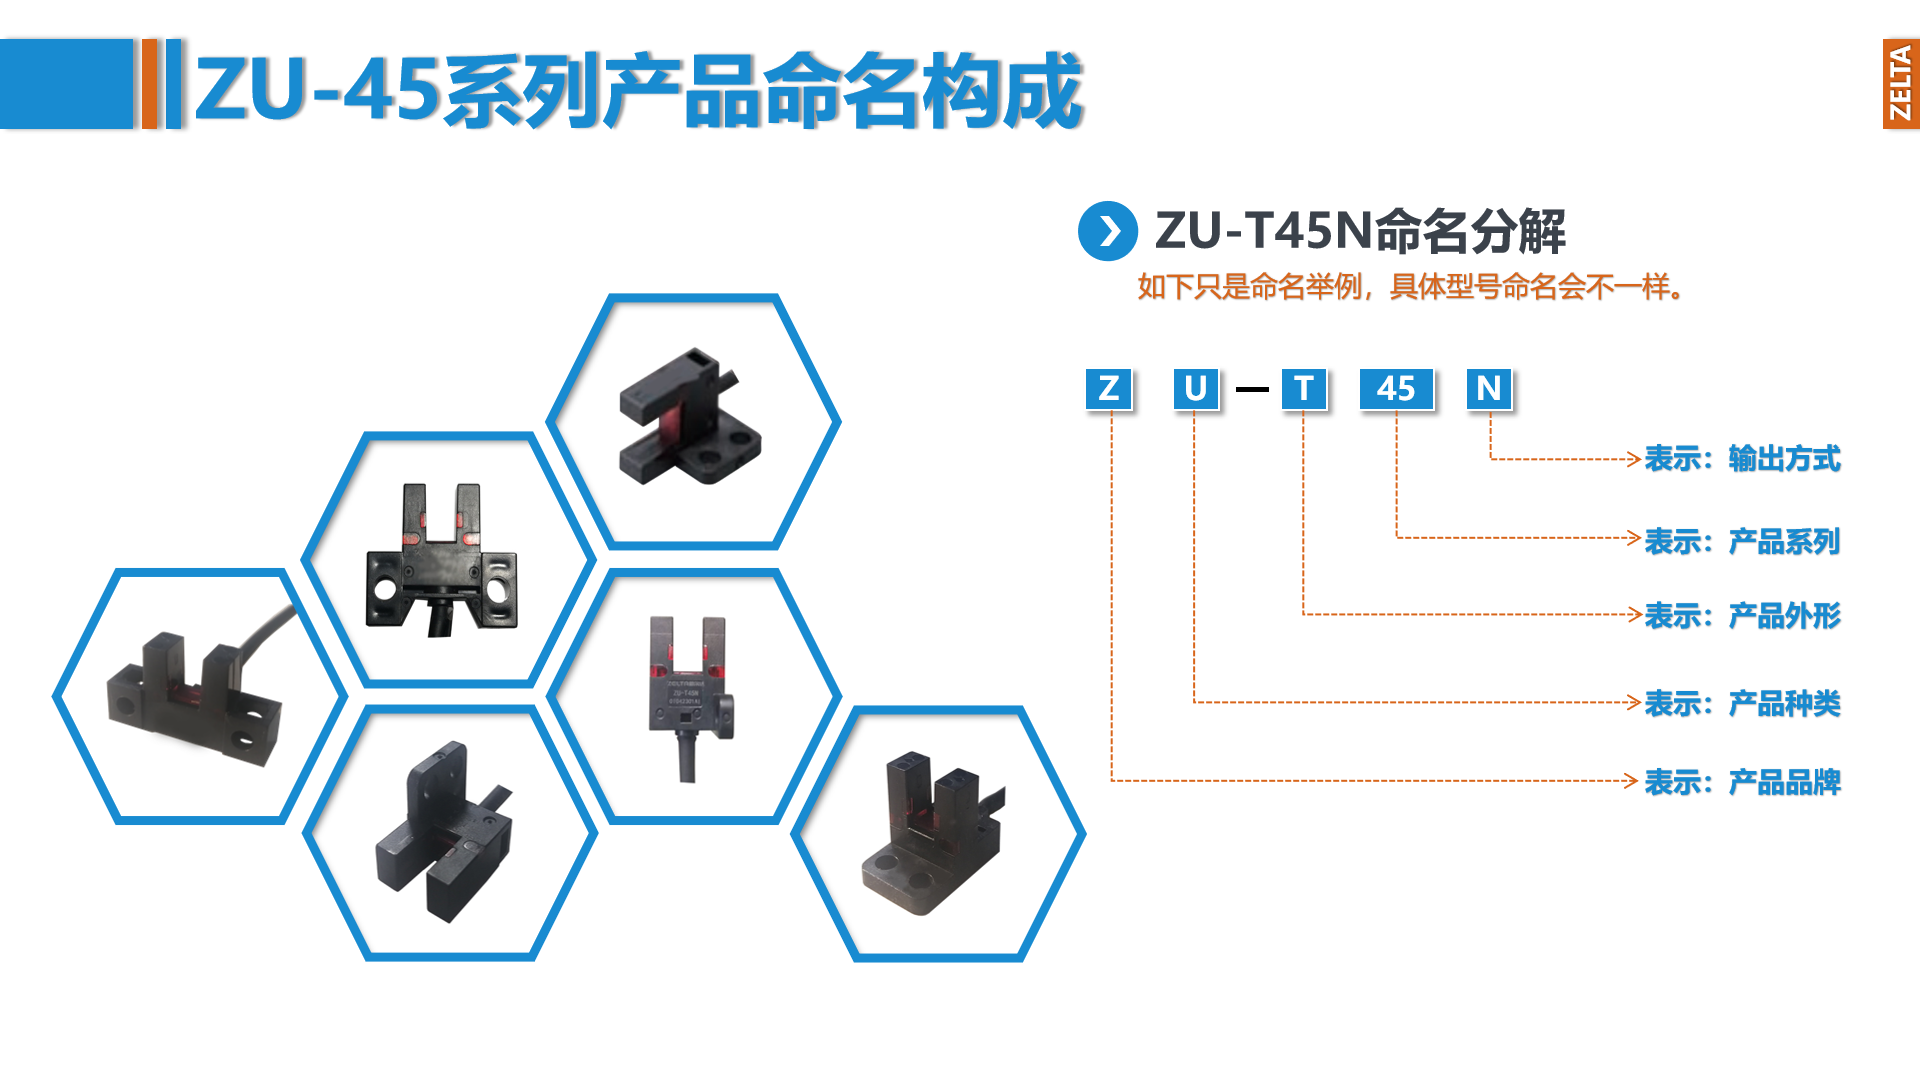 zelta助尔达推出：ZU-45U槽型光电传感器，多个特点脱颖而出！